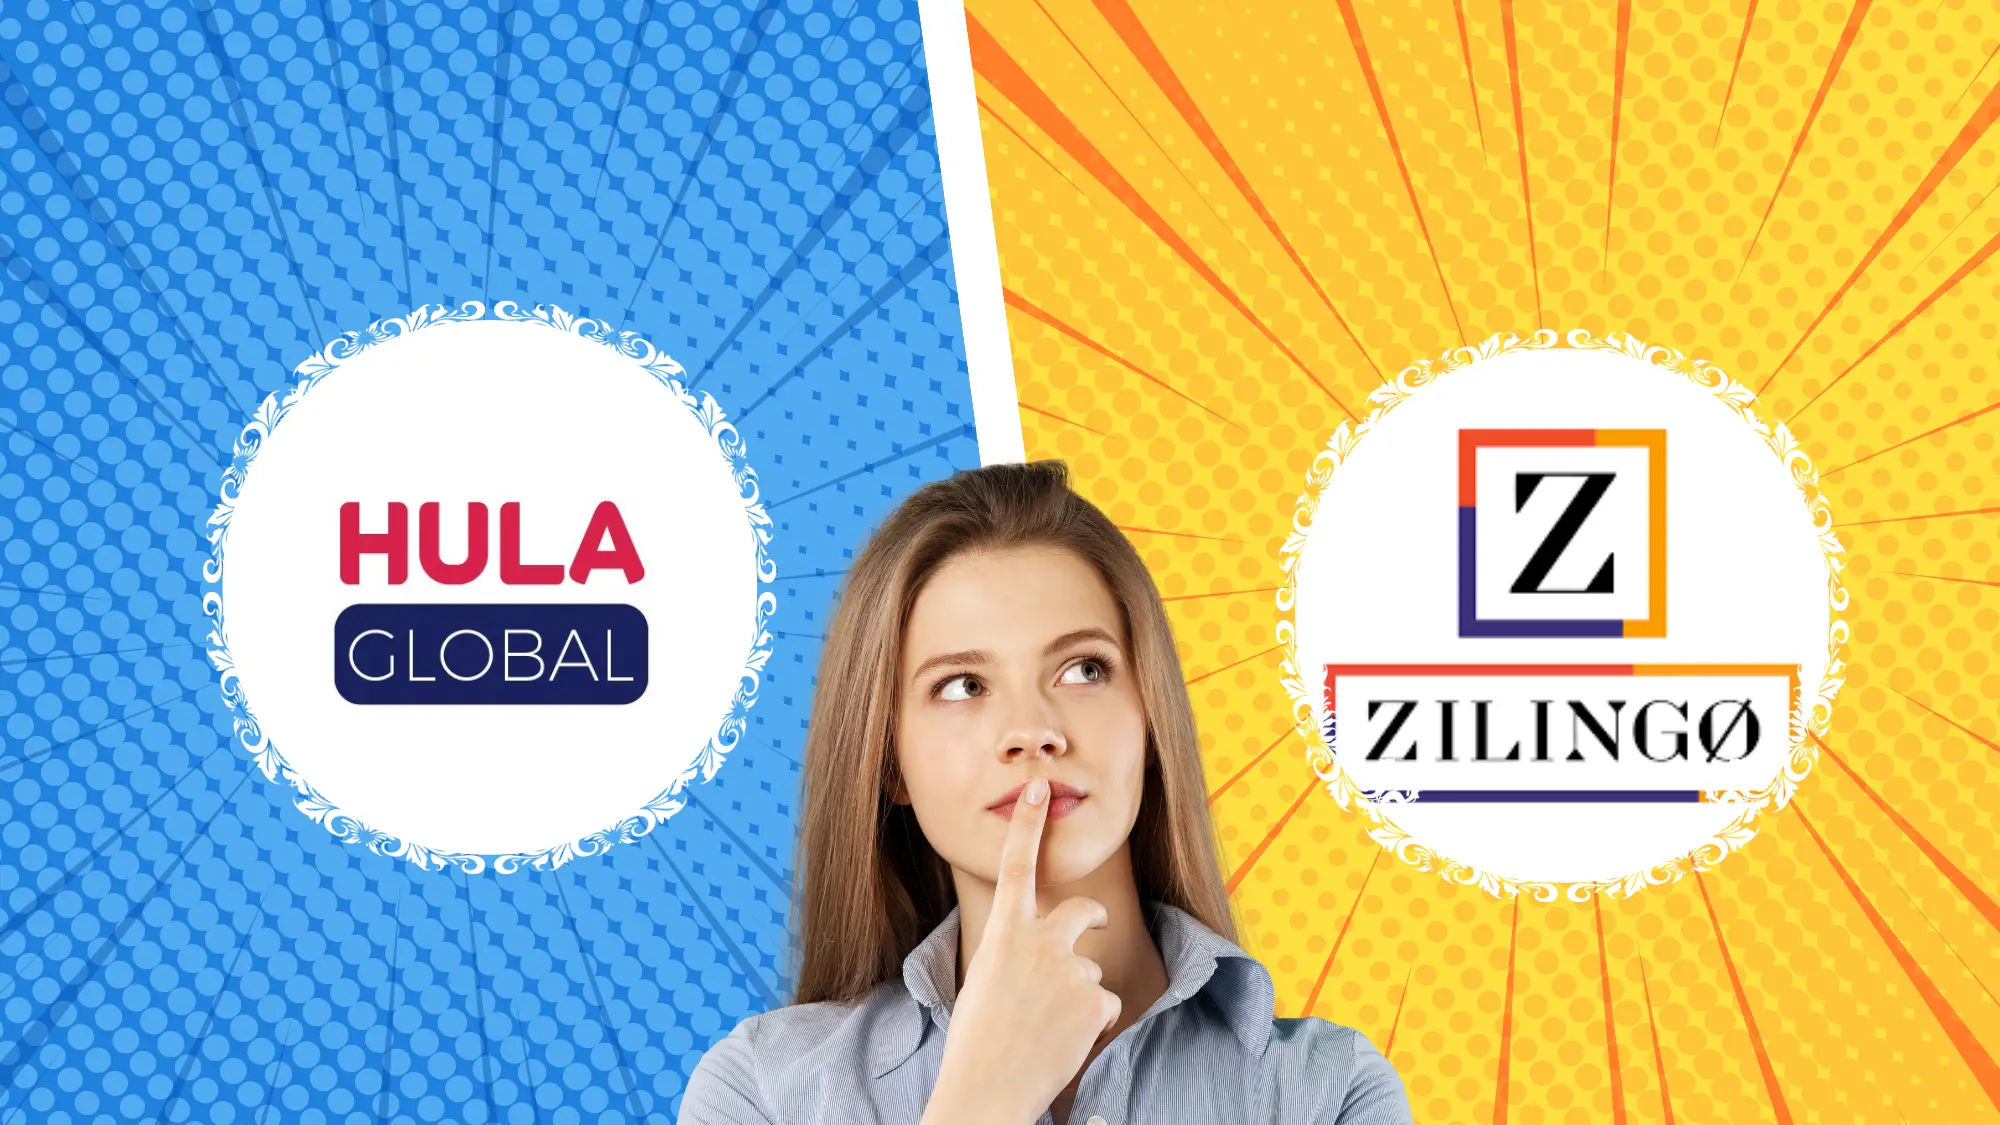 Hula Global vs. zilingo